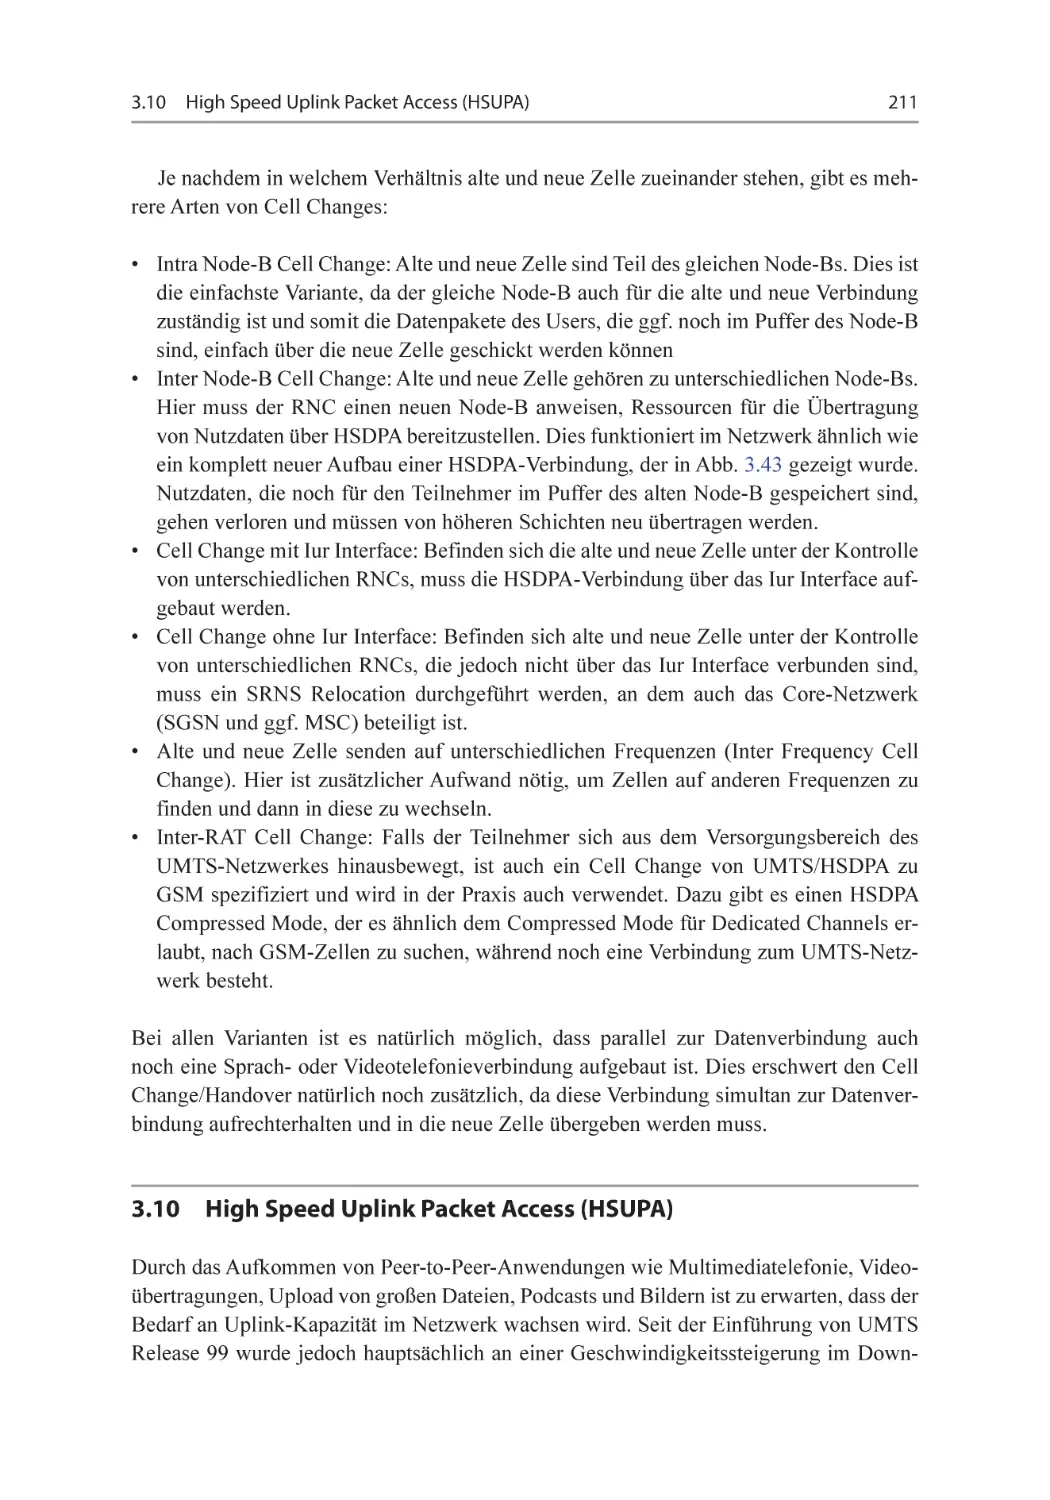 3.10 High Speed Uplink Packet Access (HSUPA)